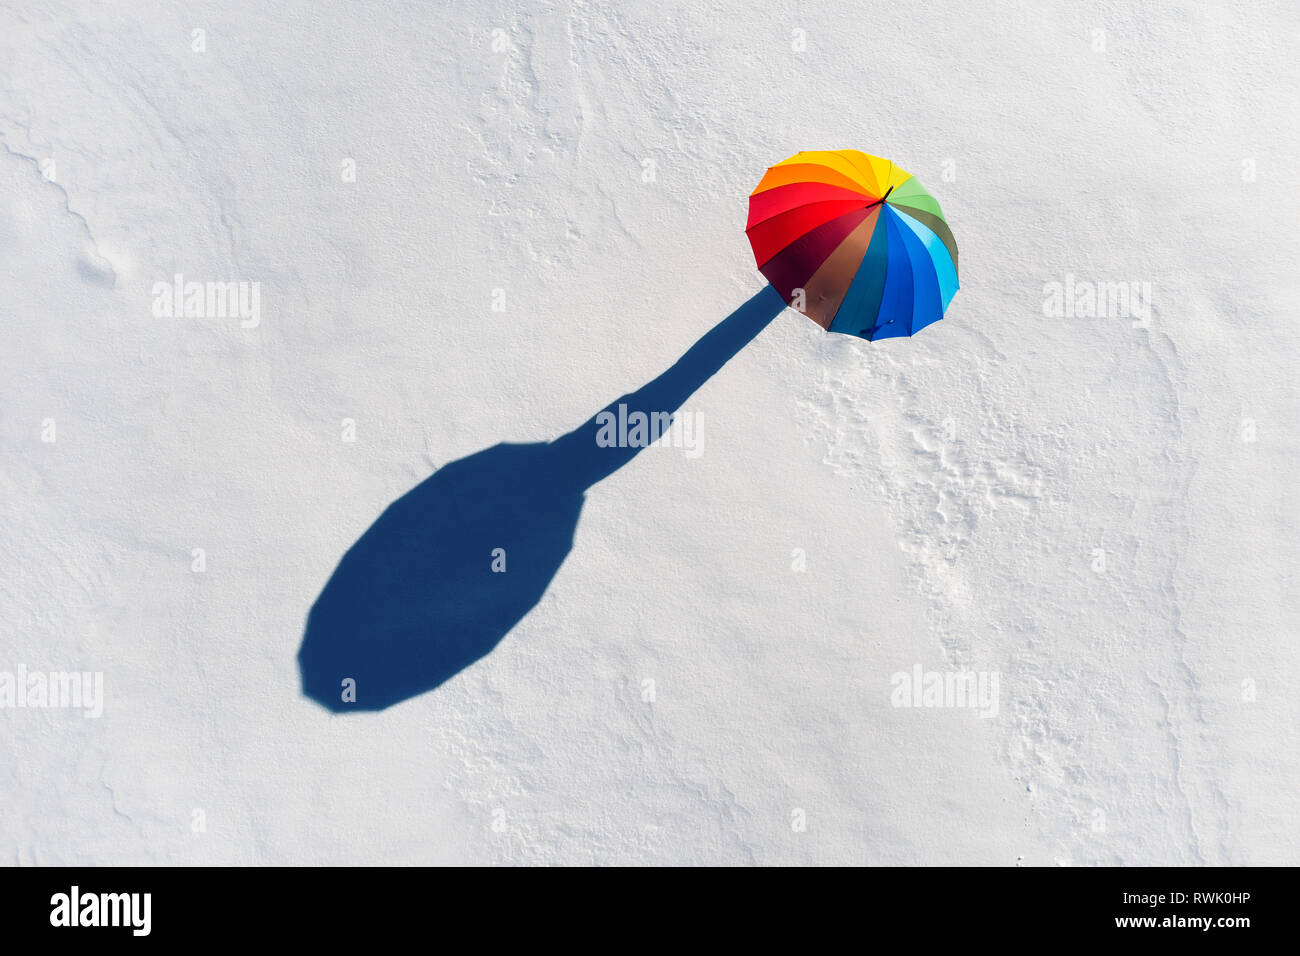 Jemand unter Regenbogenfarbenen auf weißem Schnee. Ansicht von oben Stockfoto